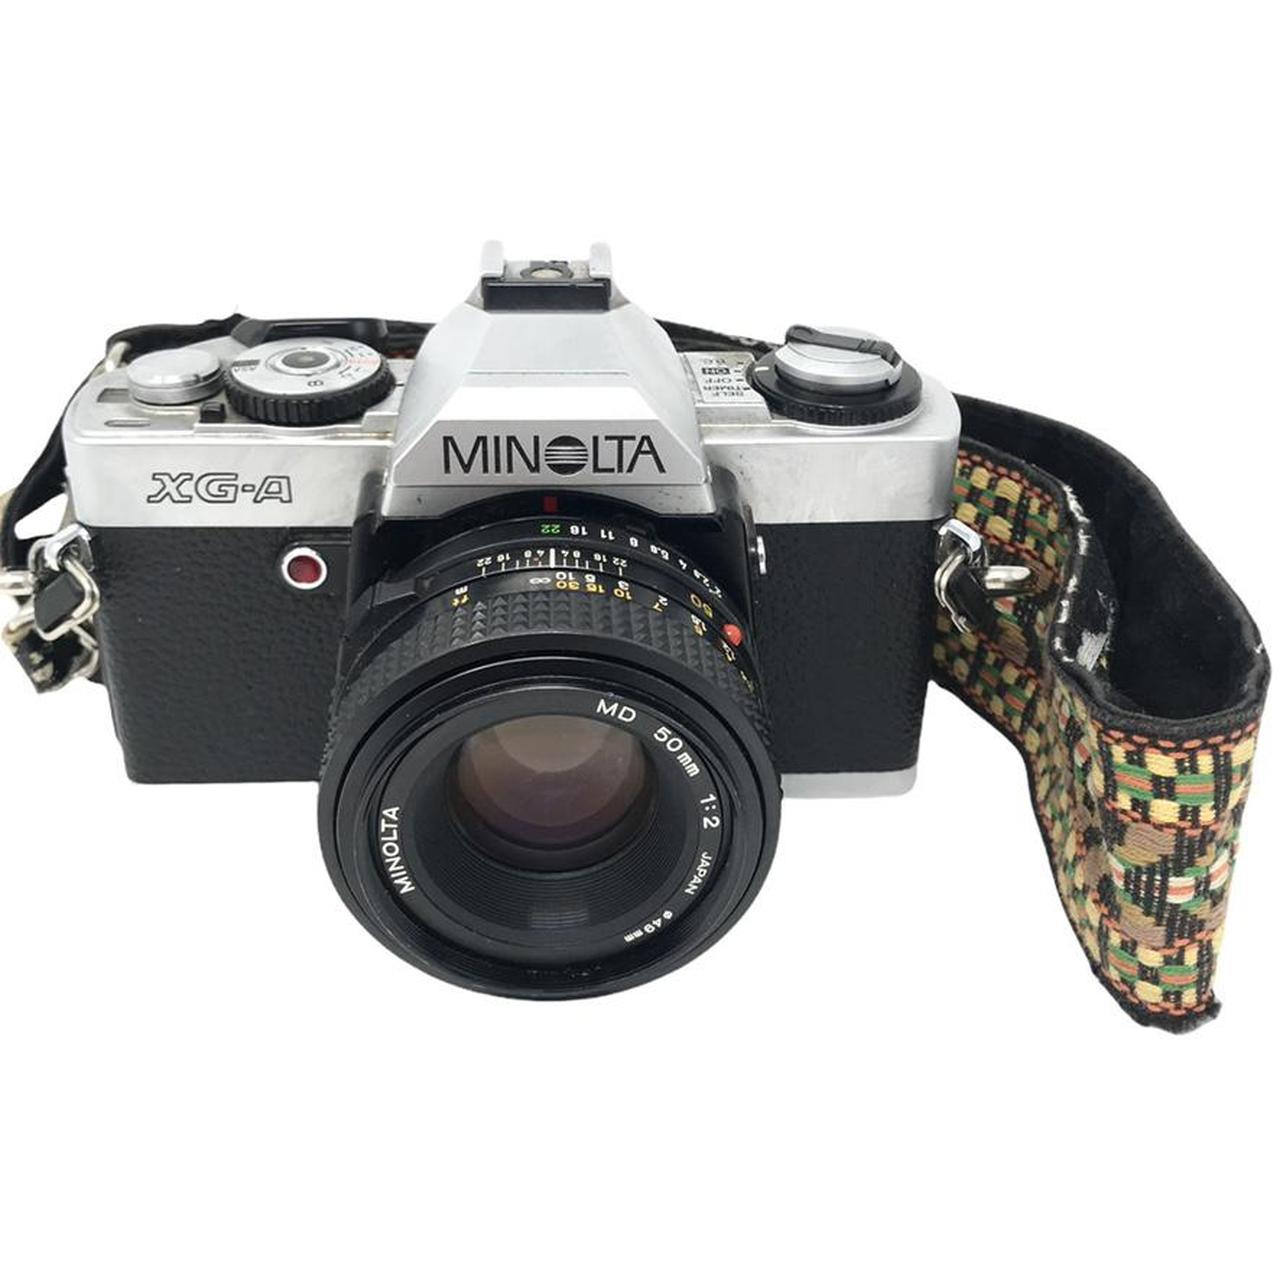 Product Image 2 - Minolta XG-A 35mm Film Camera

Comes